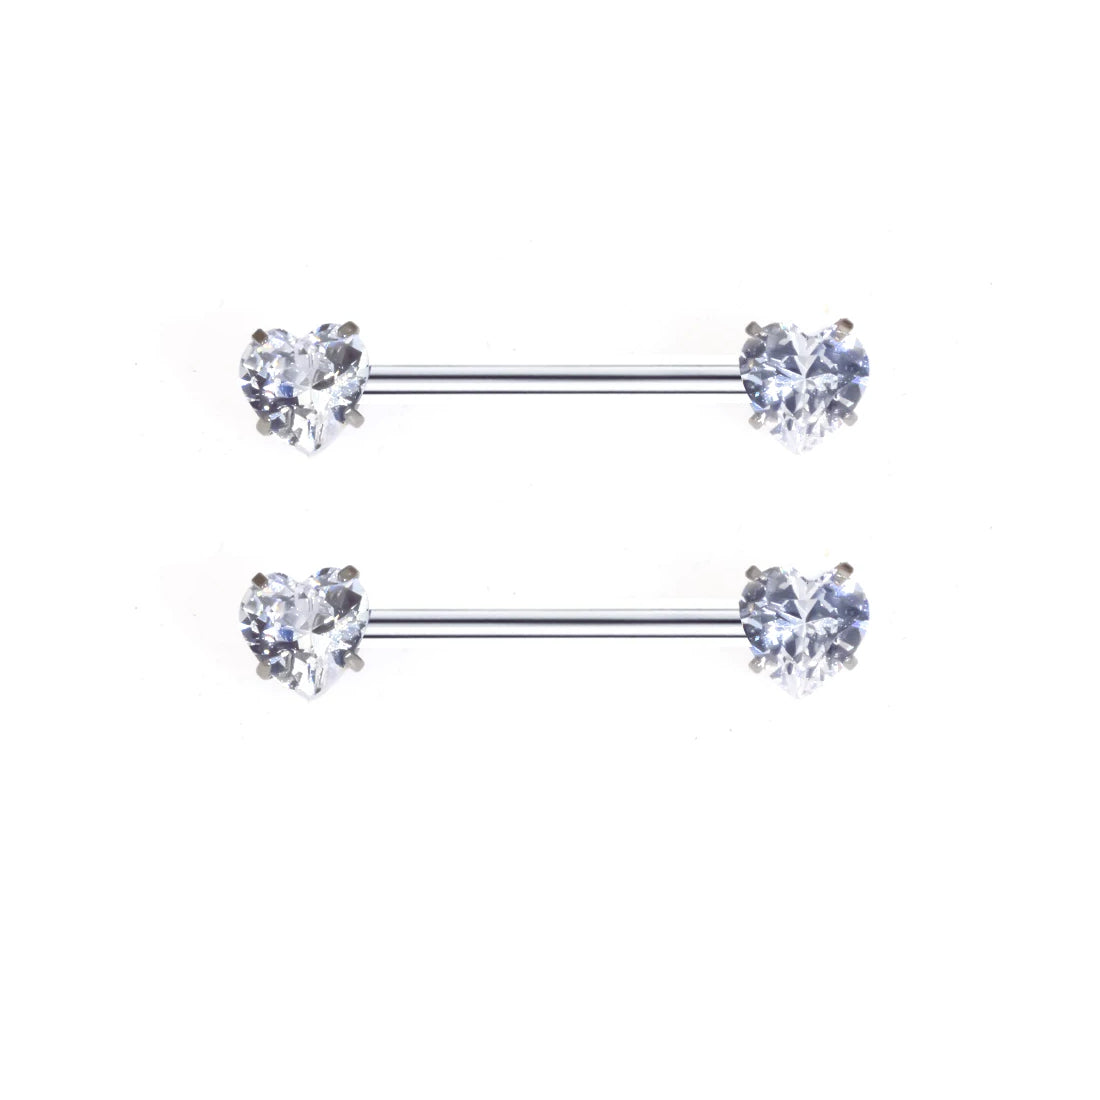 Hartvormige tepelringen met diamanten goud en zilver titanium 2 stuks tepelpiercing halters 16G